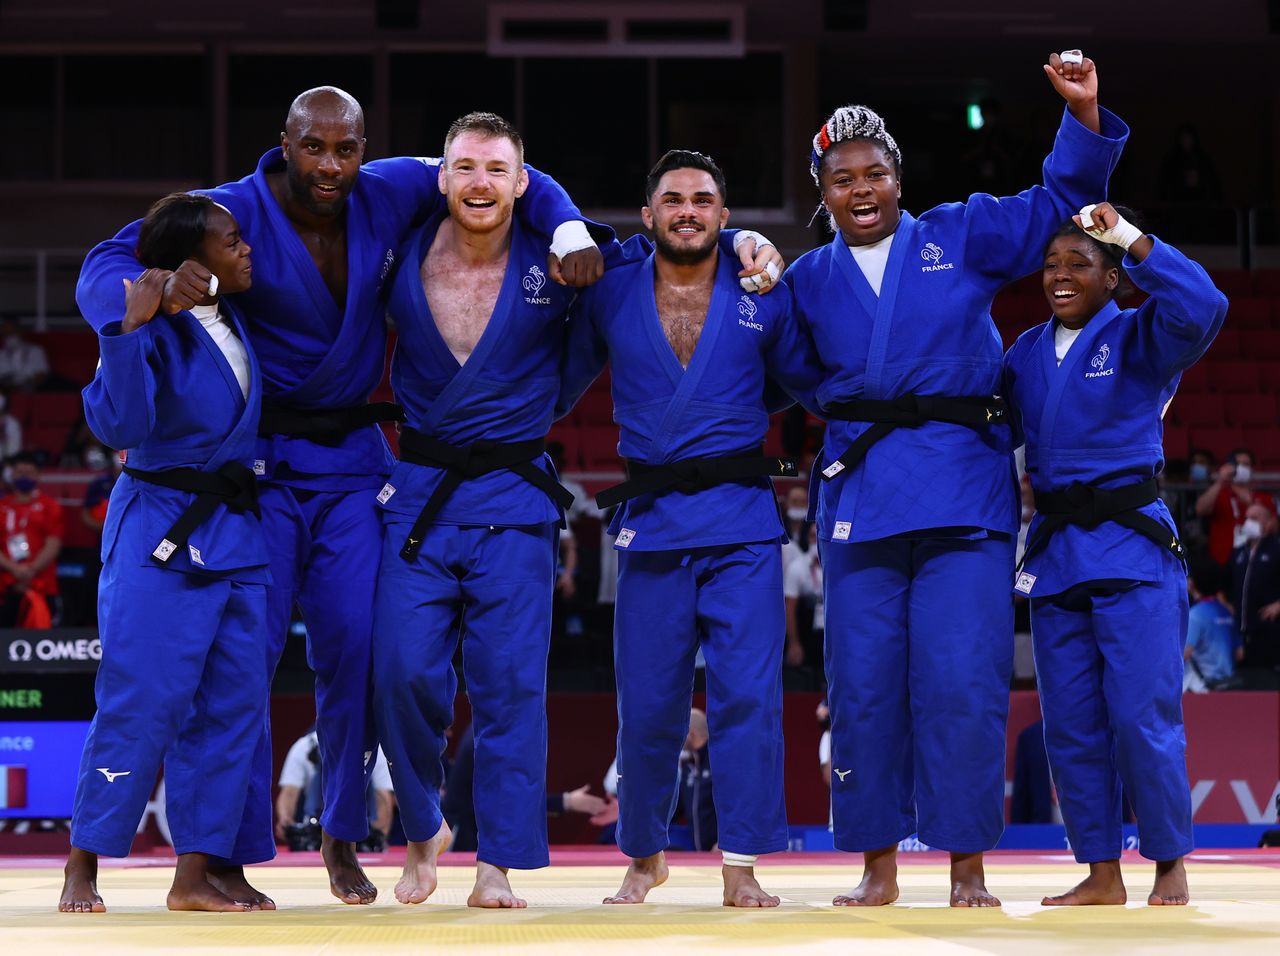 الفريق الفرنسي يحتفل بفوزه بذهبية في الجودو خلال منافسات أولمبياد طوكيو 2020 يوم السبت. تصوير: سيرجيو بيريز - رويترز.